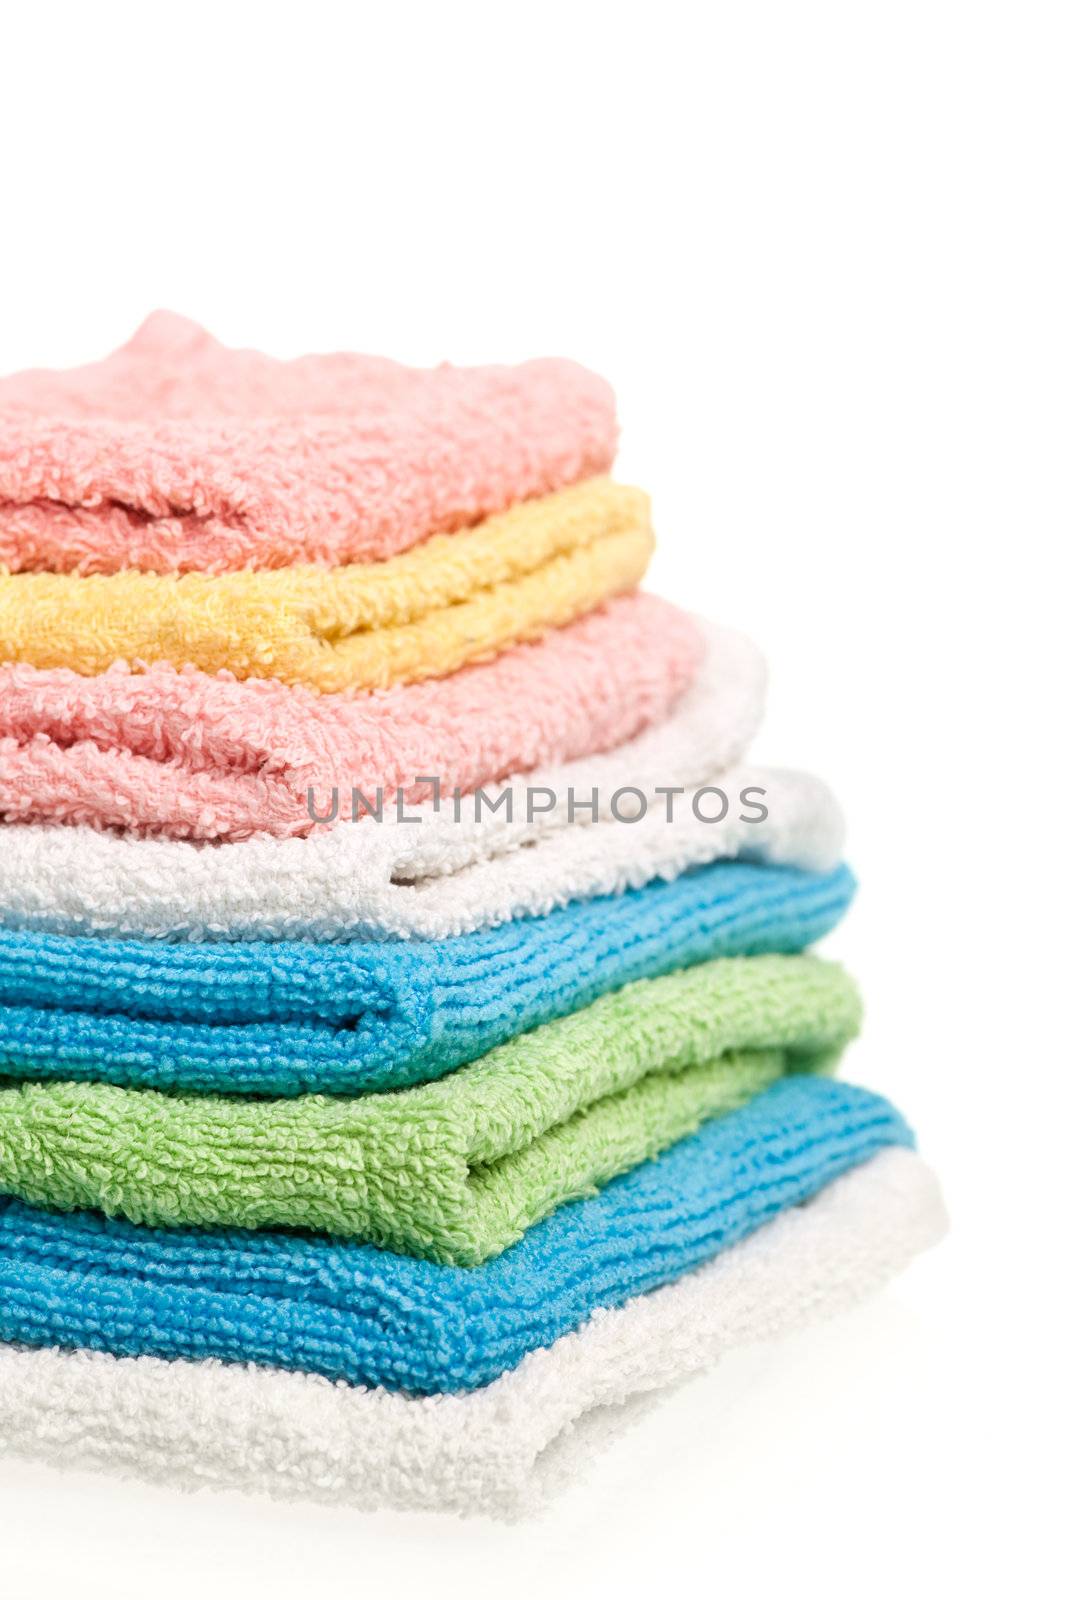 Towels by naumoid